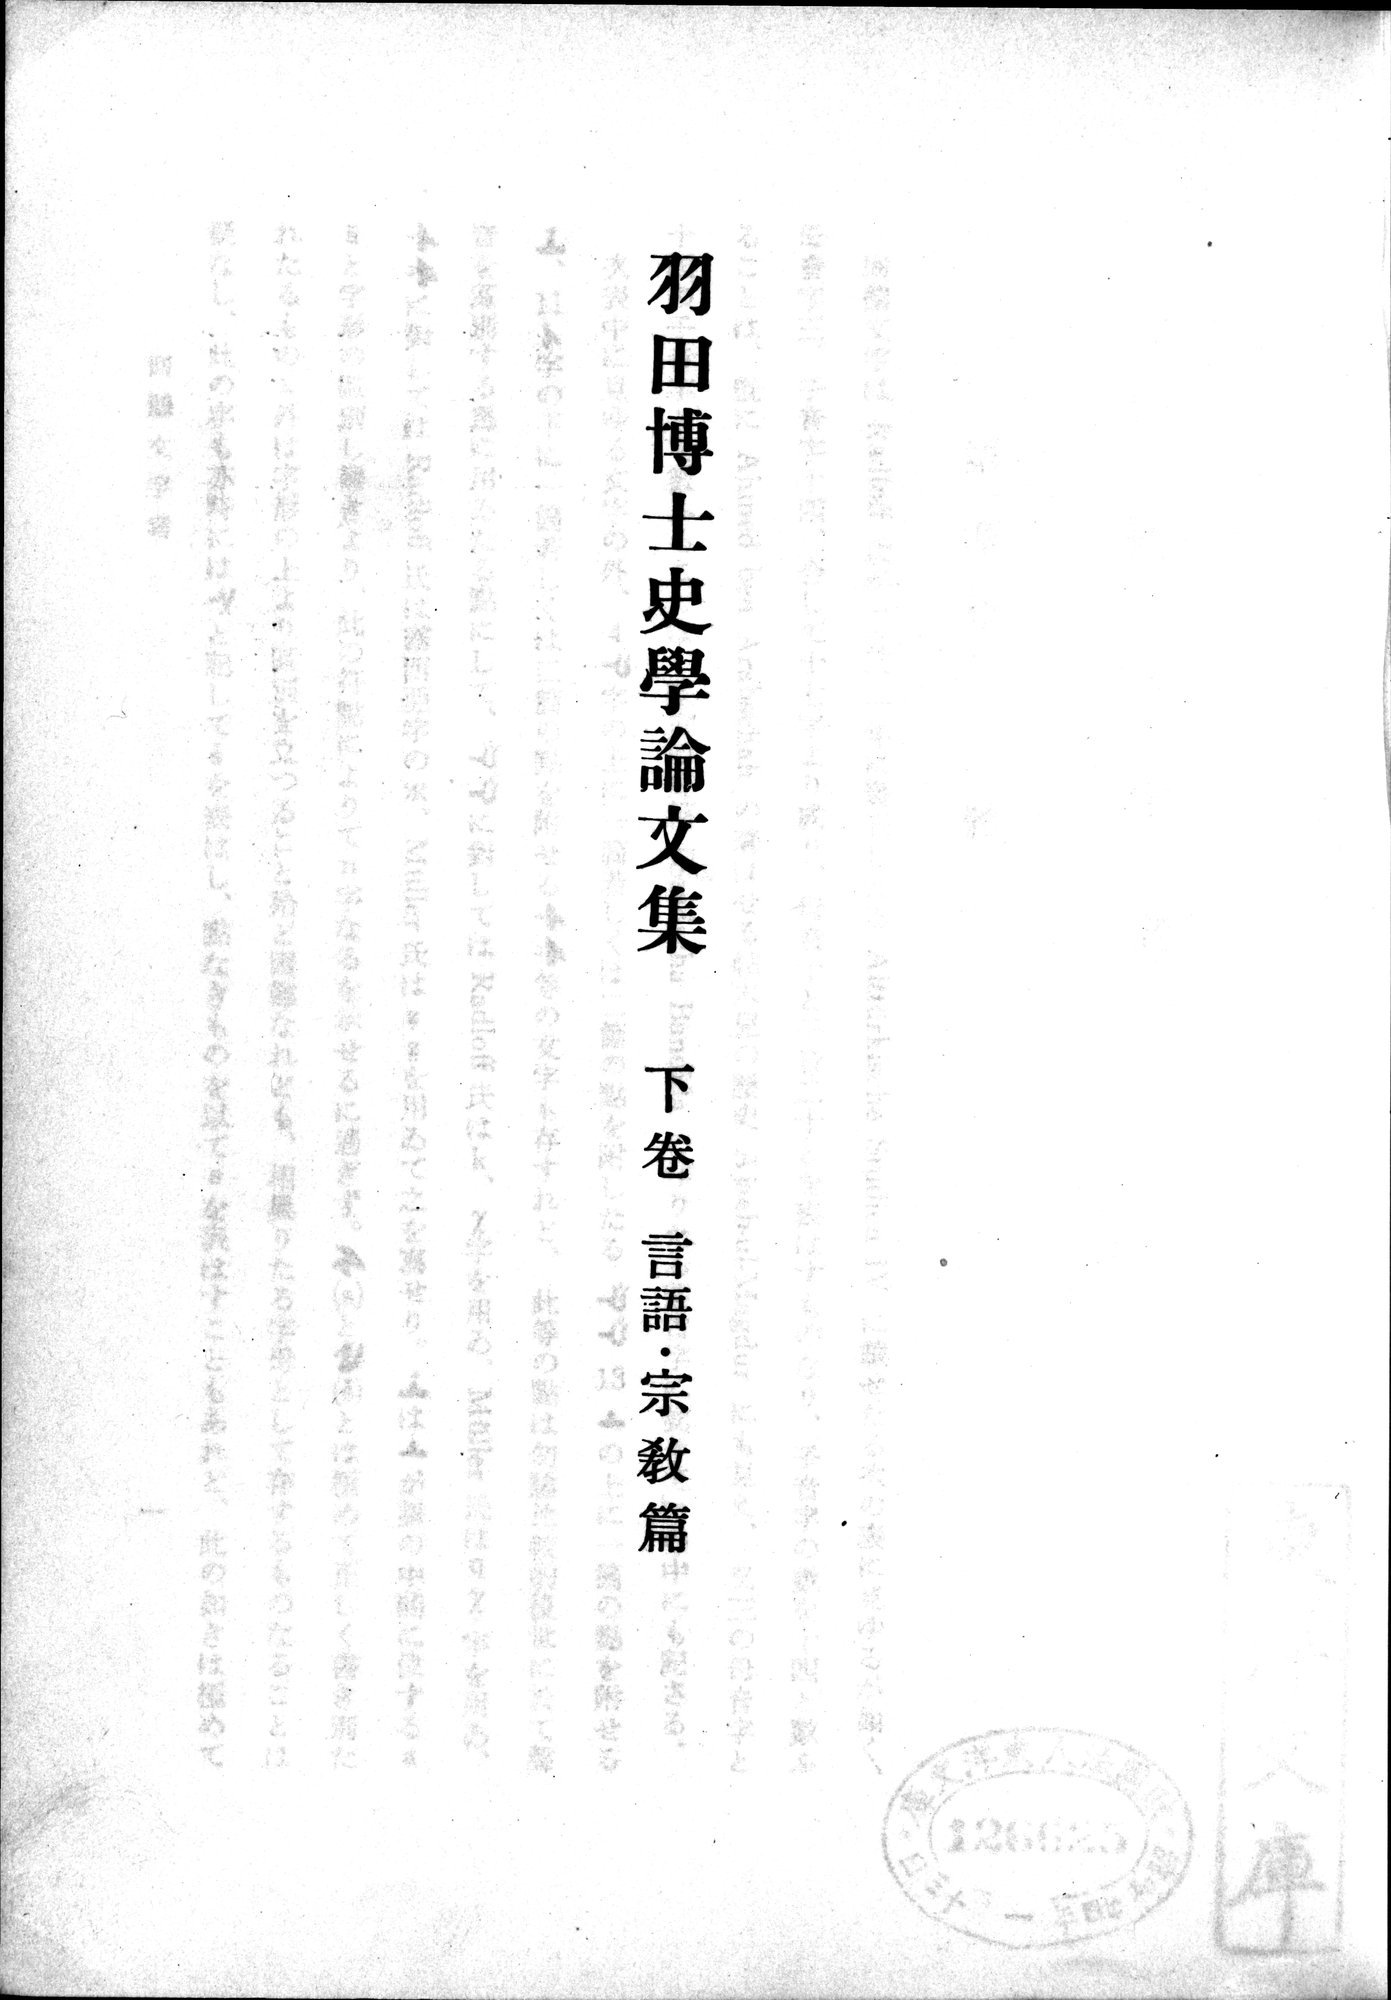 羽田博士史学論文集 : vol.2 / 49 ページ（白黒高解像度画像）